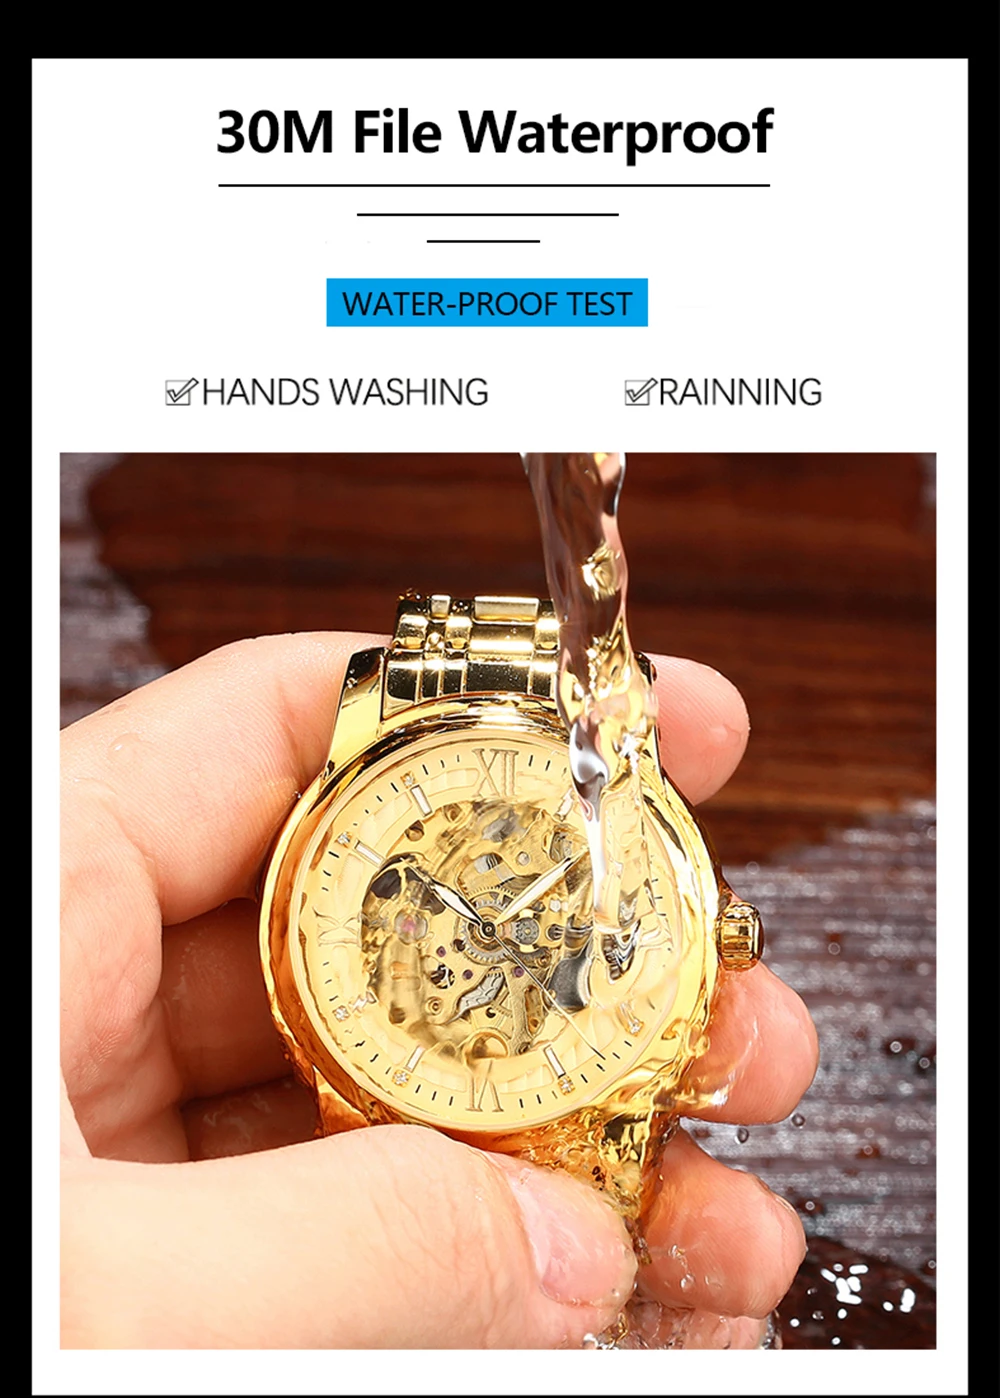 HAIQIN, модные механические часы, мужские золотые наручные часы со скелетом, мужские часы, Топ бренд, роскошные часы, мужские деловые часы, Reloj hombres